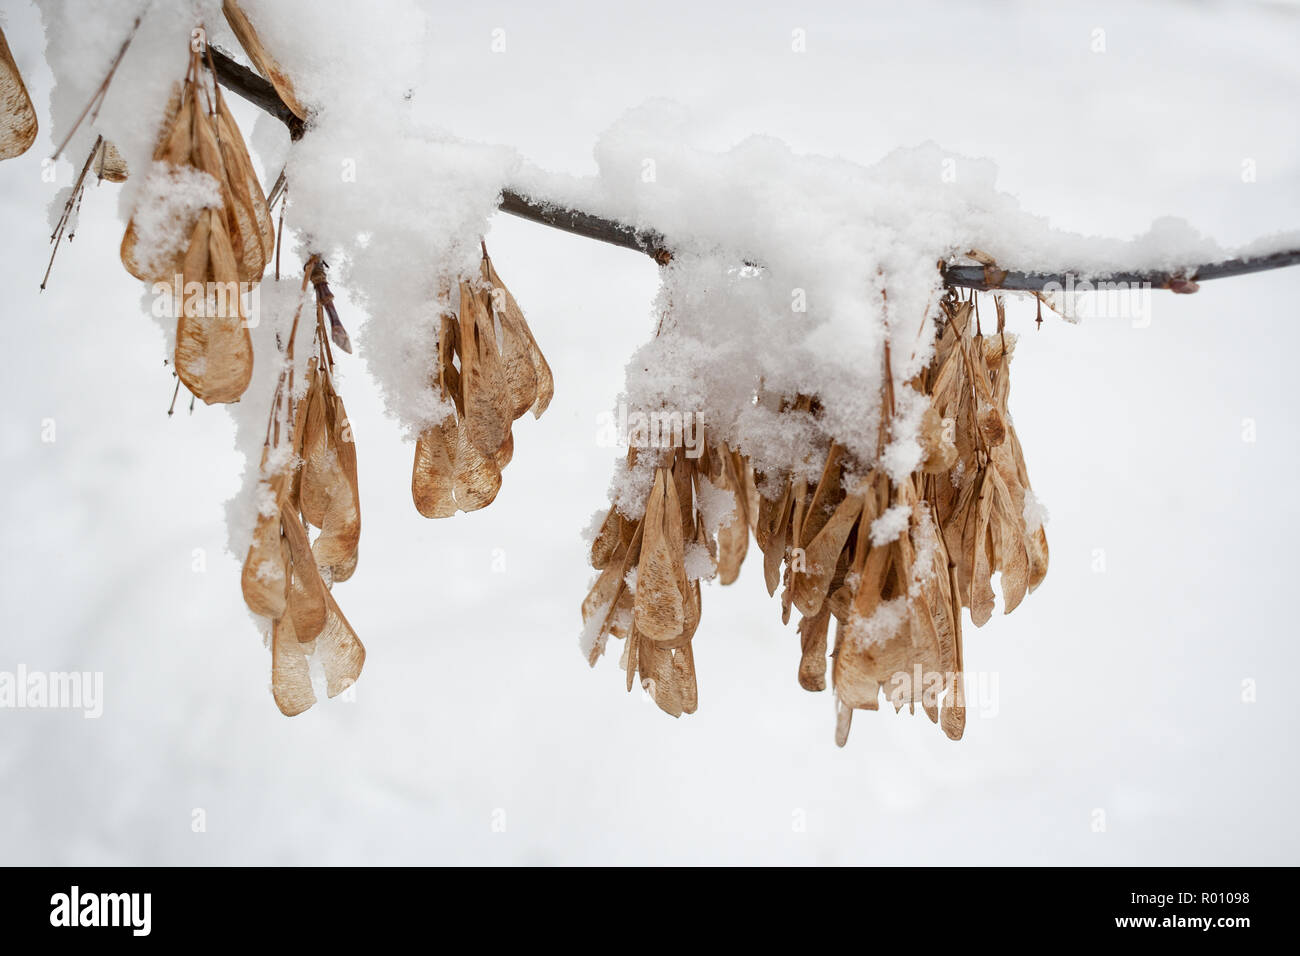 Horizontale schneebedeckten Ash tree branch mit hängenden Samen - rotfeuerfische. Stockfoto